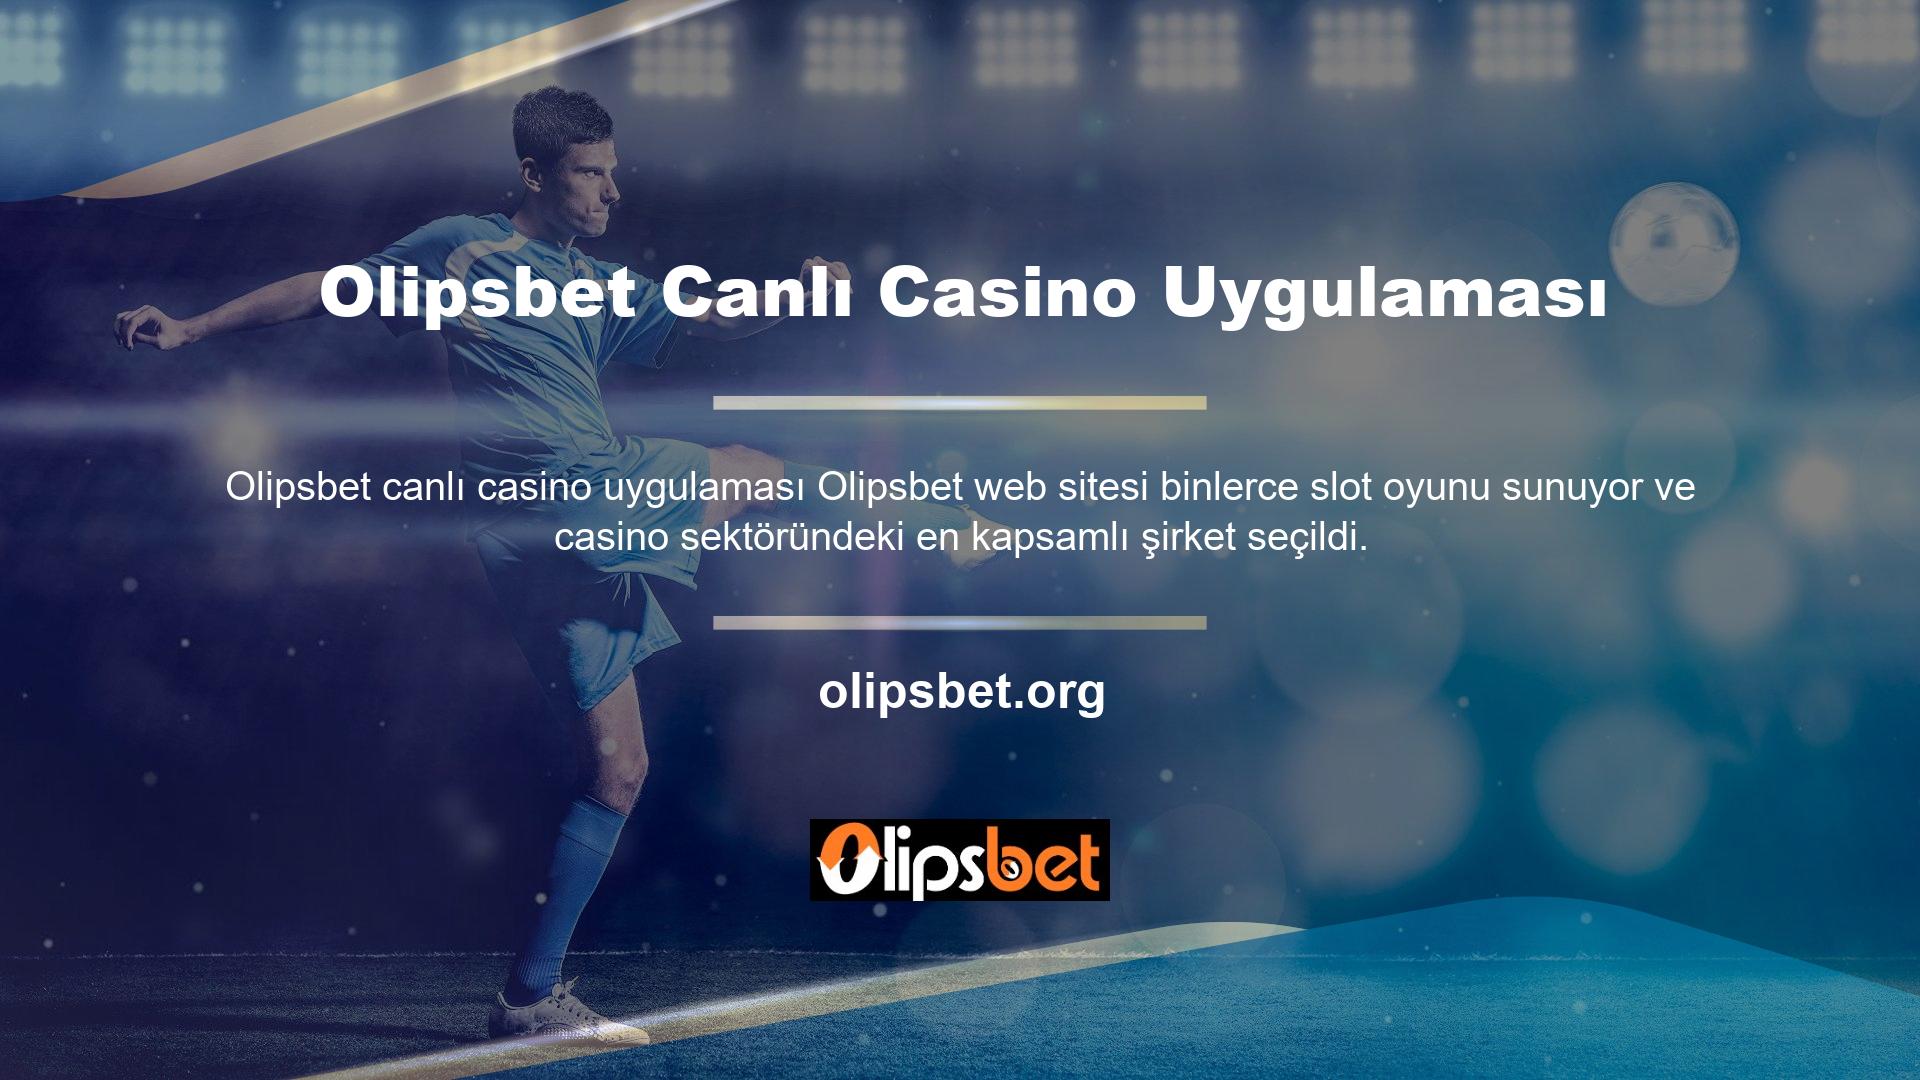 Olipsbet Canlı Casino Uygulaması